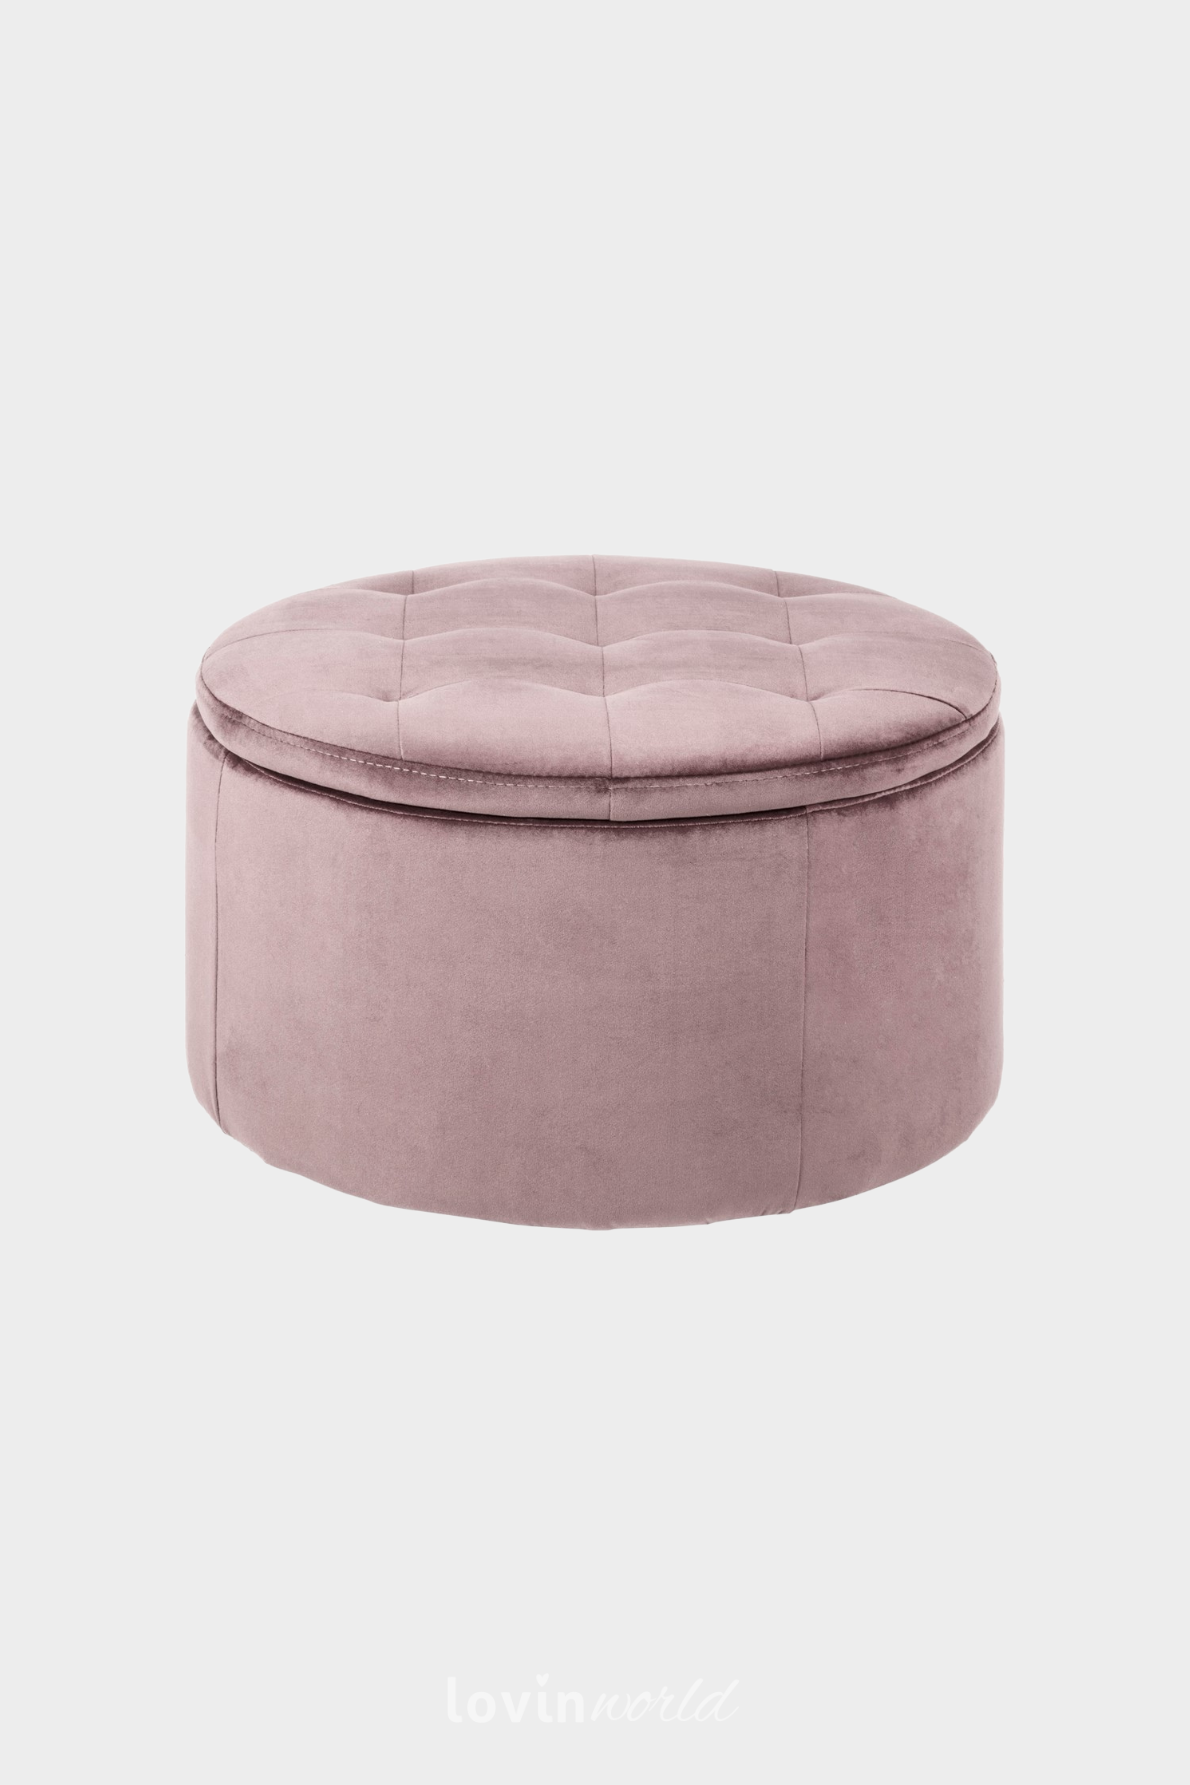 Pouf contenitore Worry, in colore rosa 35x60 cm.-1